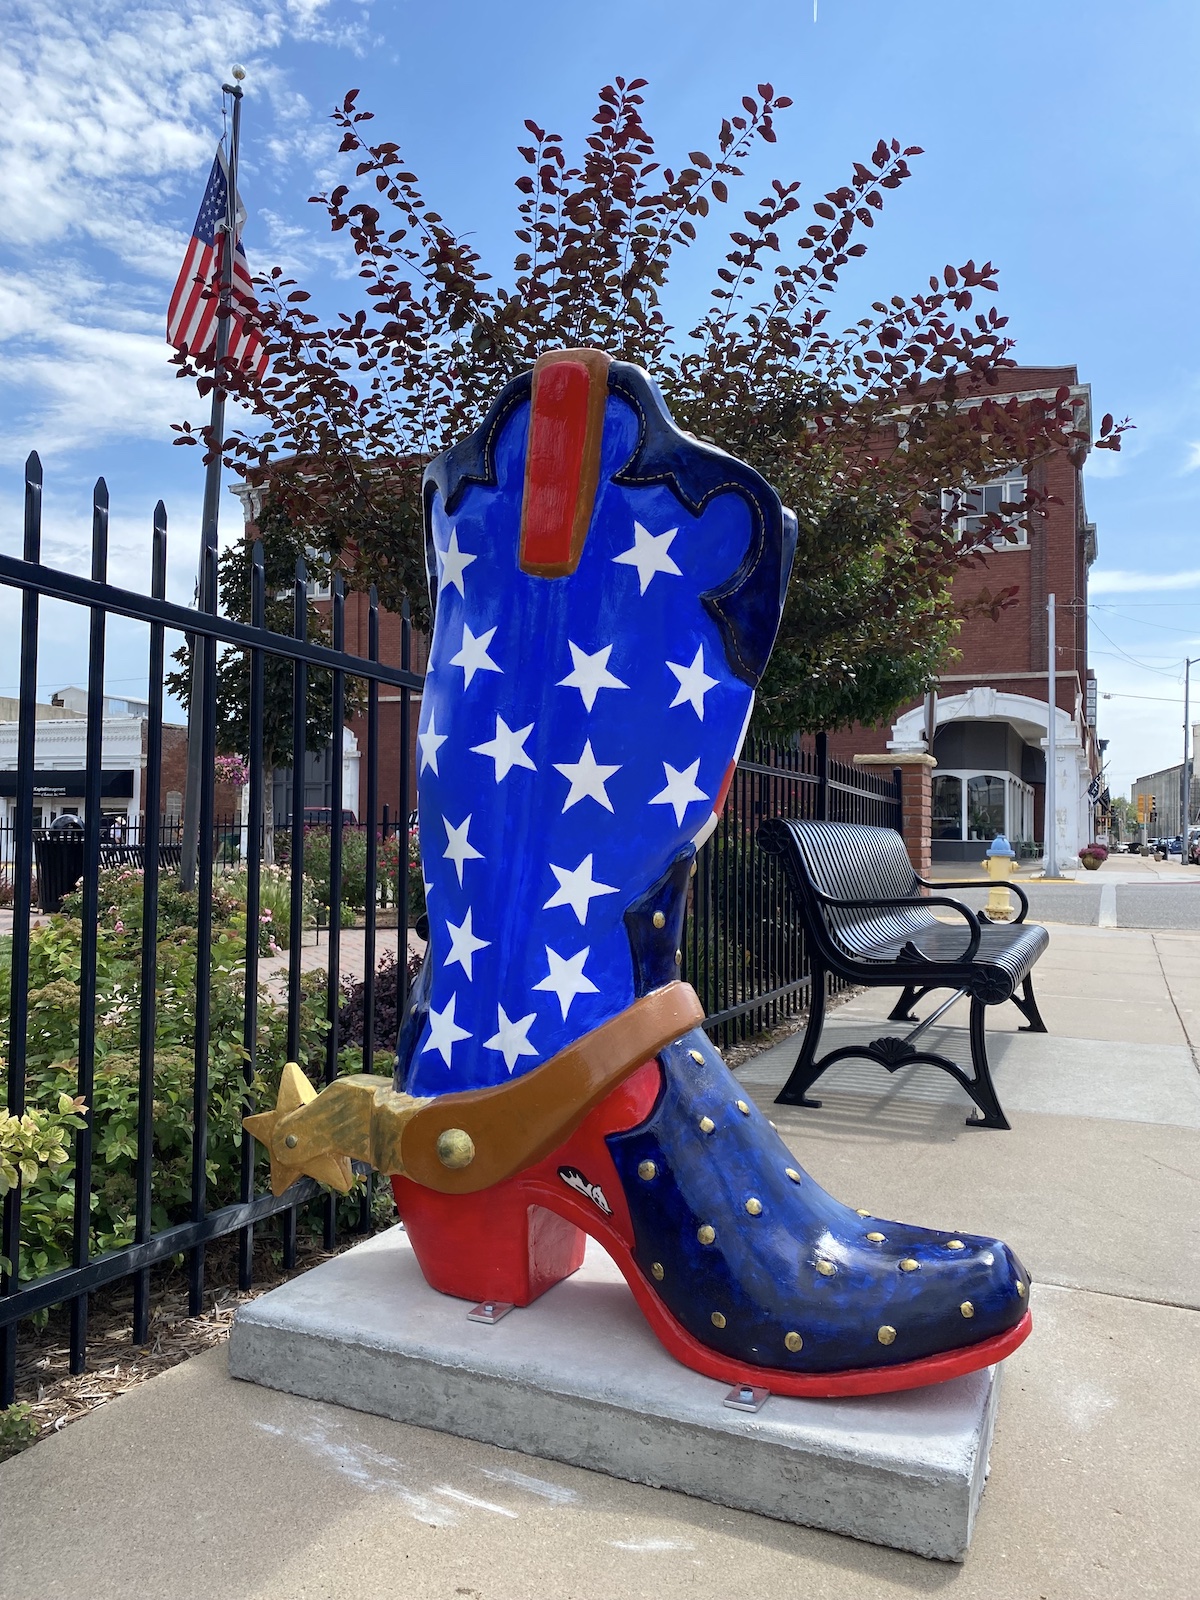 Cowboy boot sculpture in Abilene, Kansas